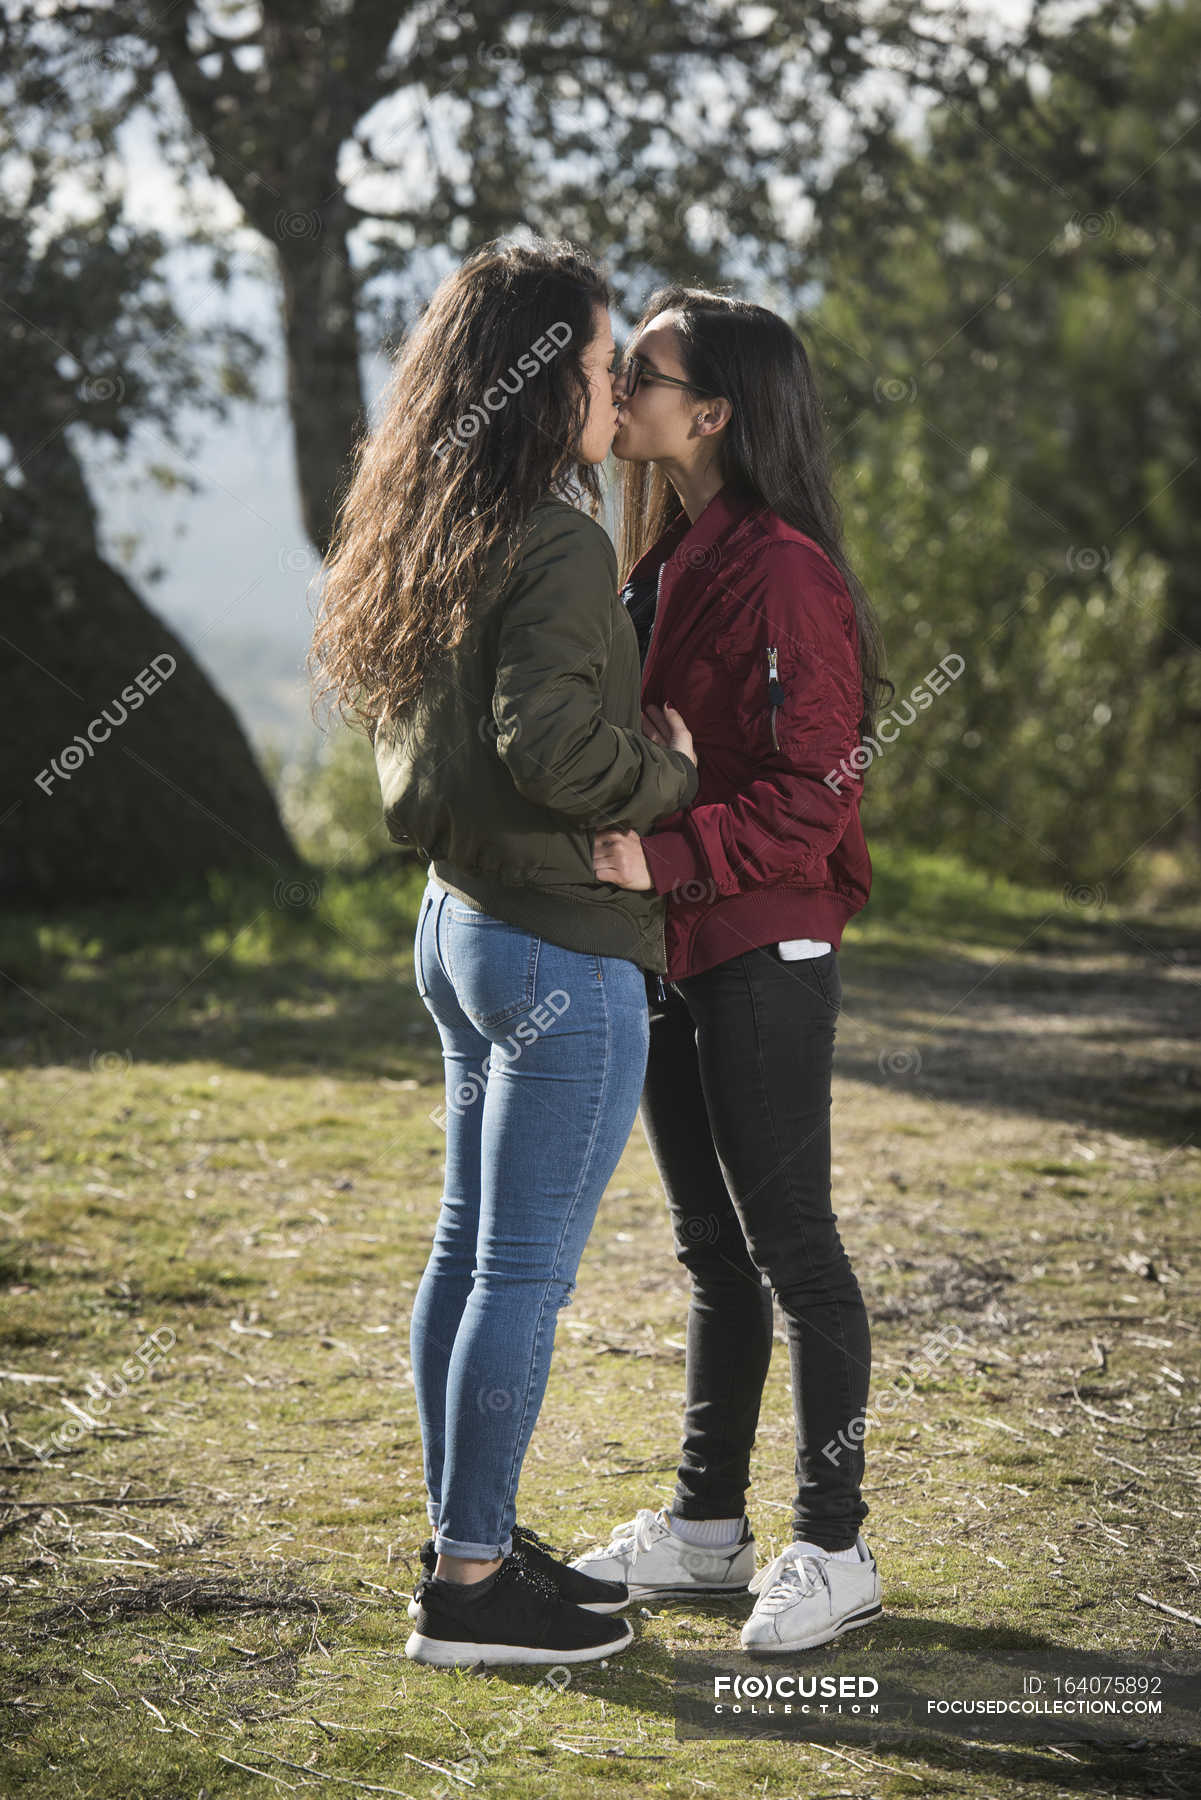 hot lesbian teens kissing